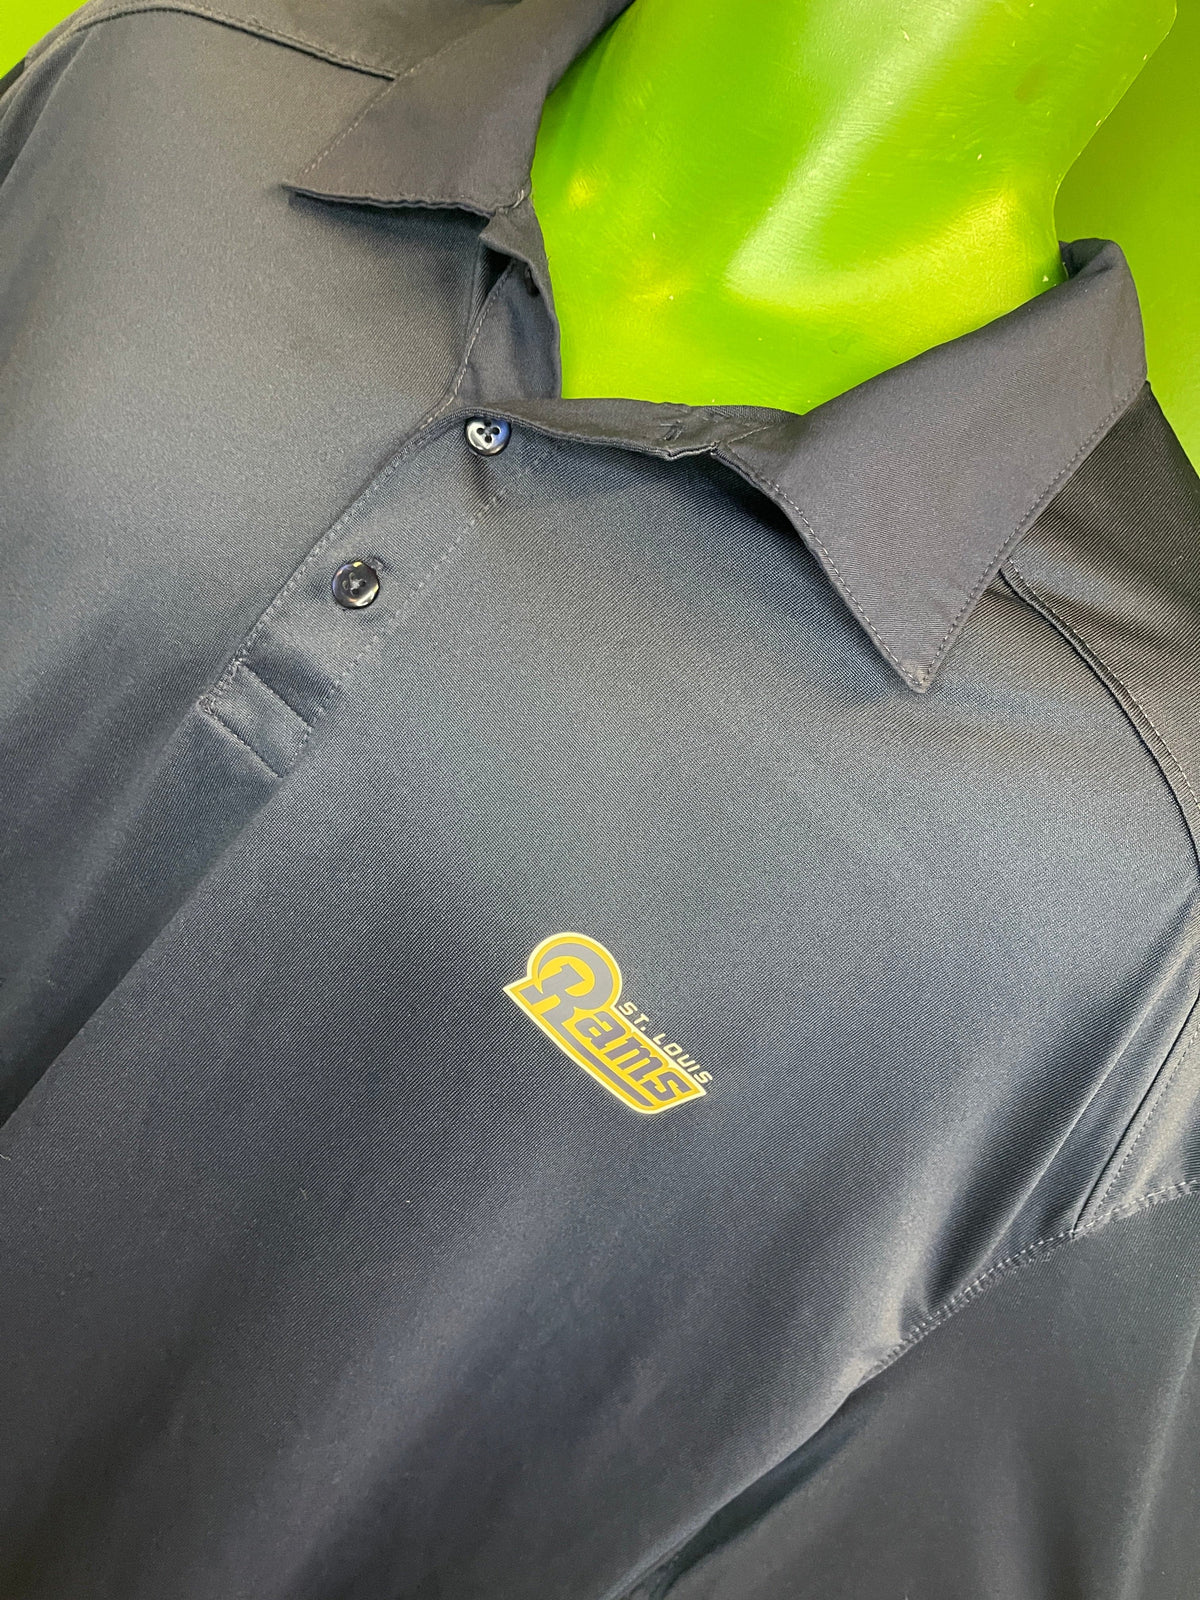 NFL St. Louis (Los Angeles) Rams Dri-Fit Golf Polo Shirt Men's X-Large